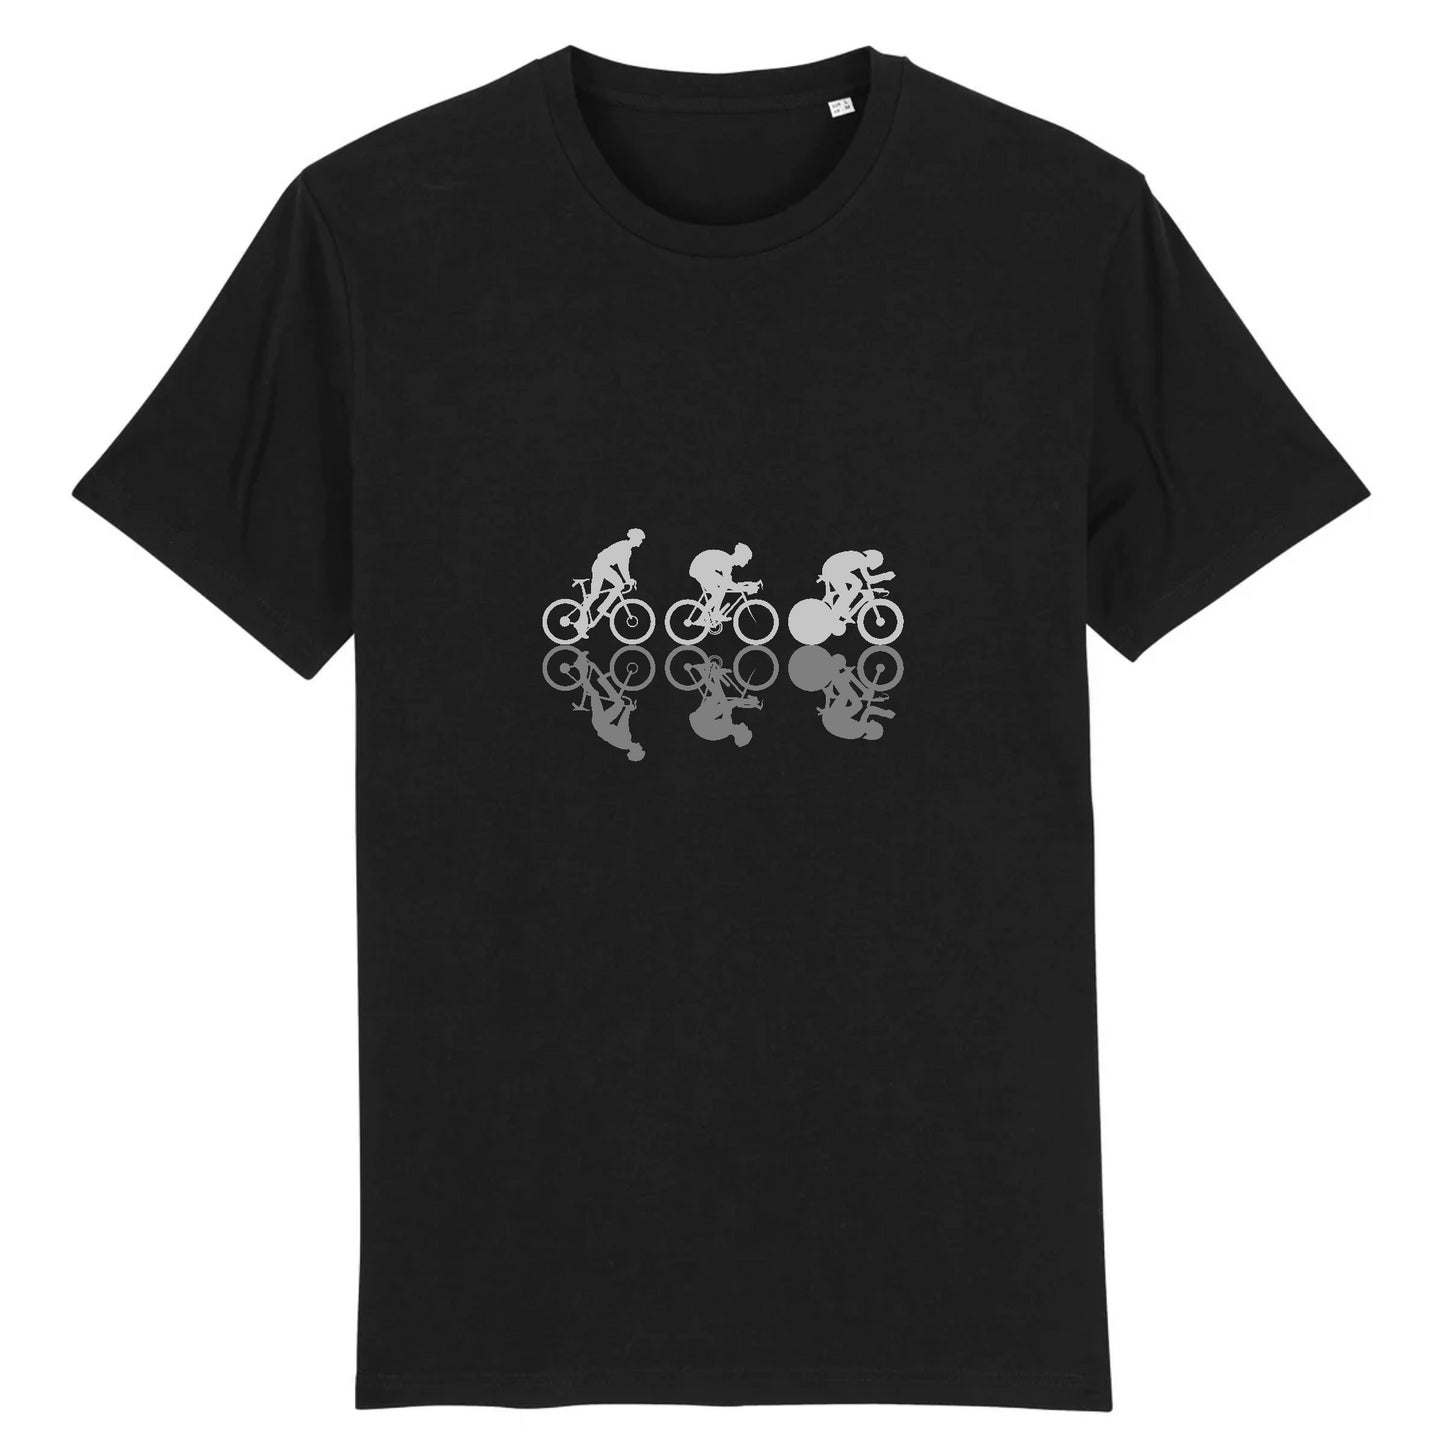 Noir - T-shirt Cyclistes Grimpeur, Rouleur, Sprinteur